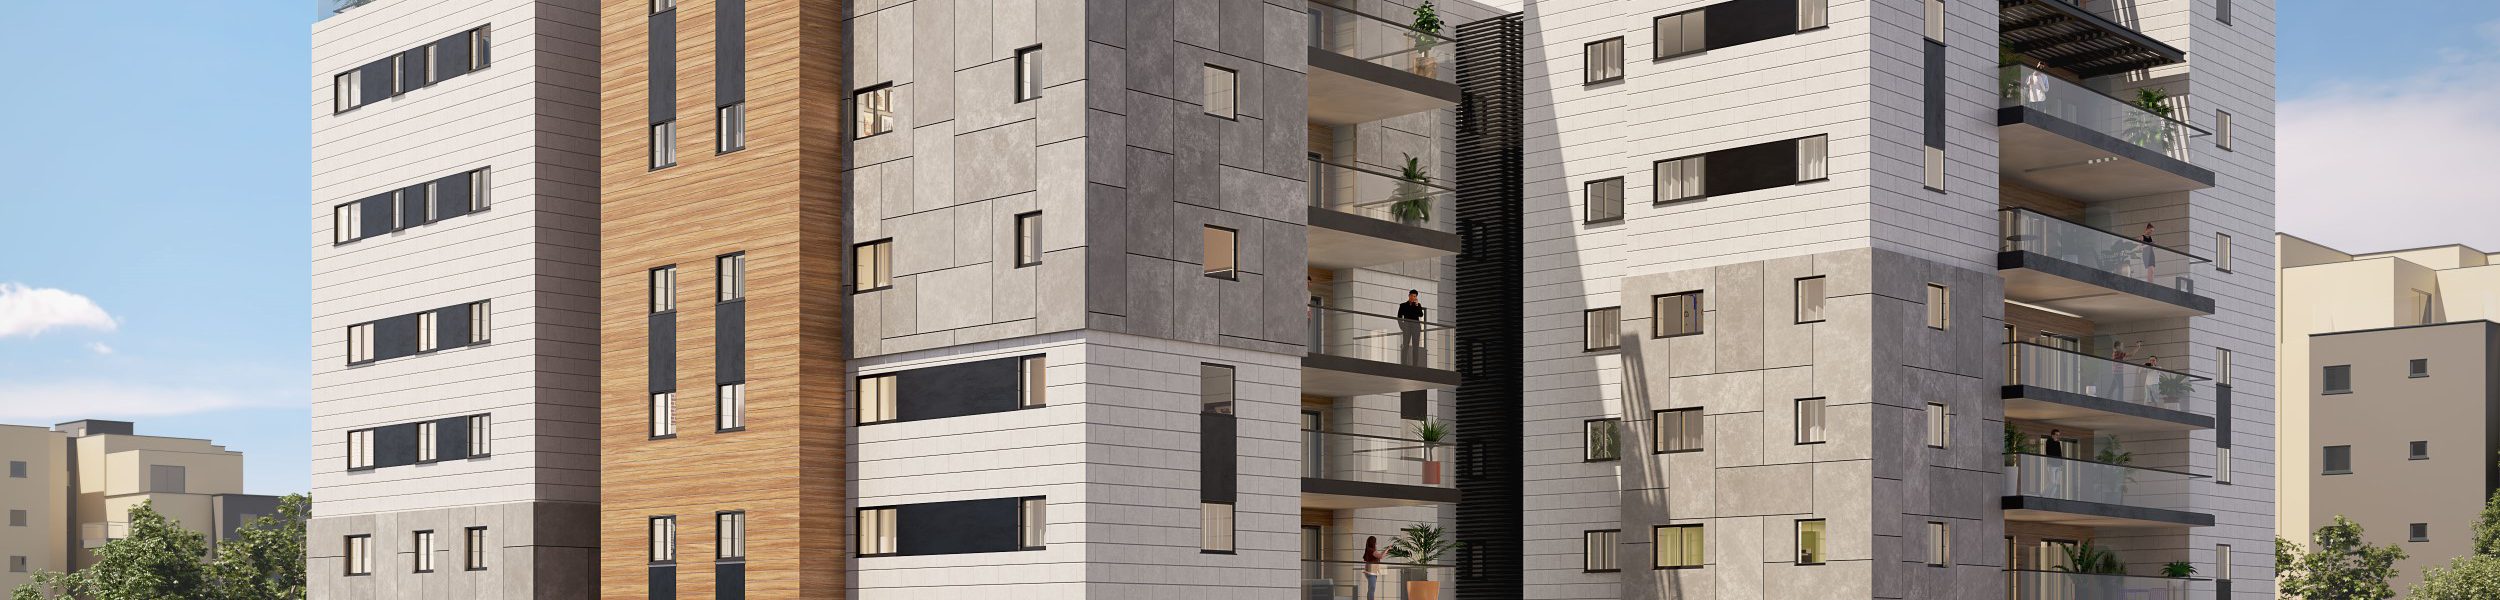 פרויקט מגורים חדש בהרצליה בשכונת נווה ישראל ברחוב הר מירון | צילום:יחצ